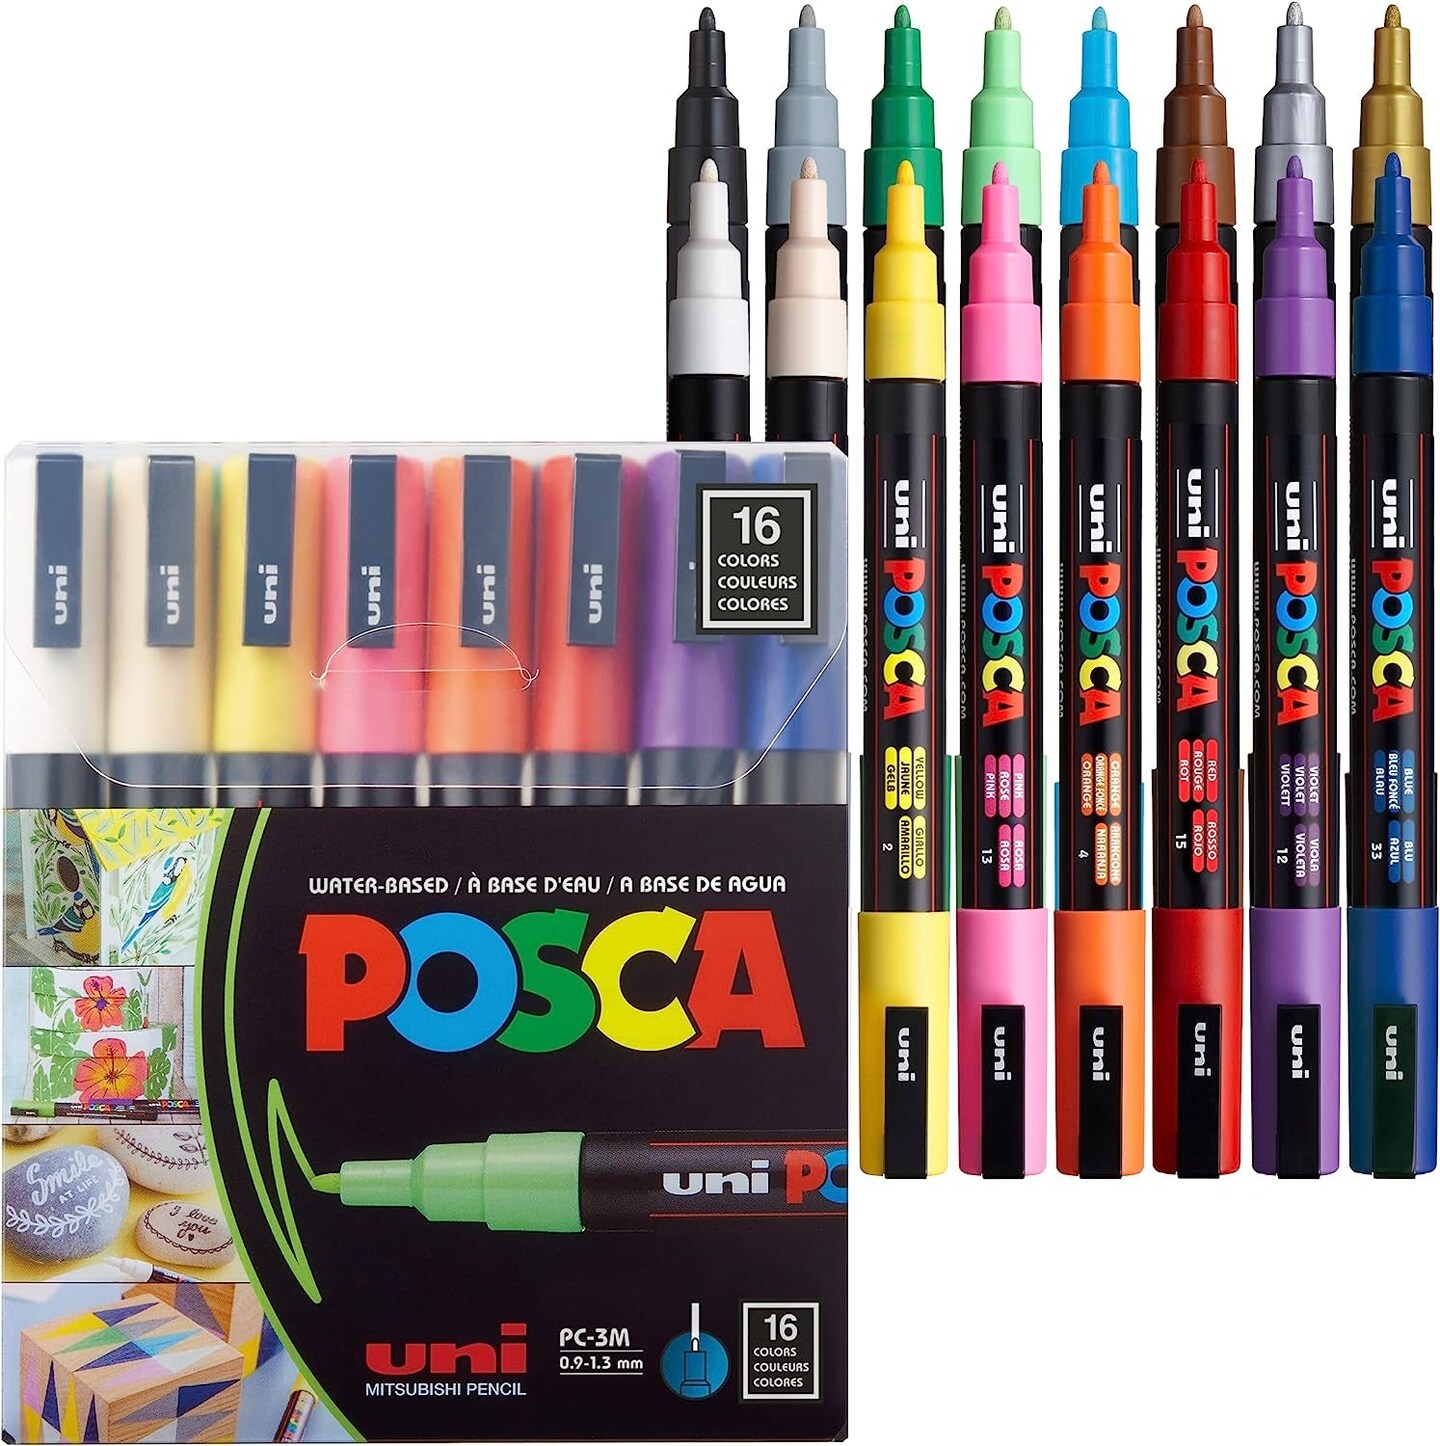 16 Markers 3M, Pens for Art Supplies, School Supplies, Rock Art